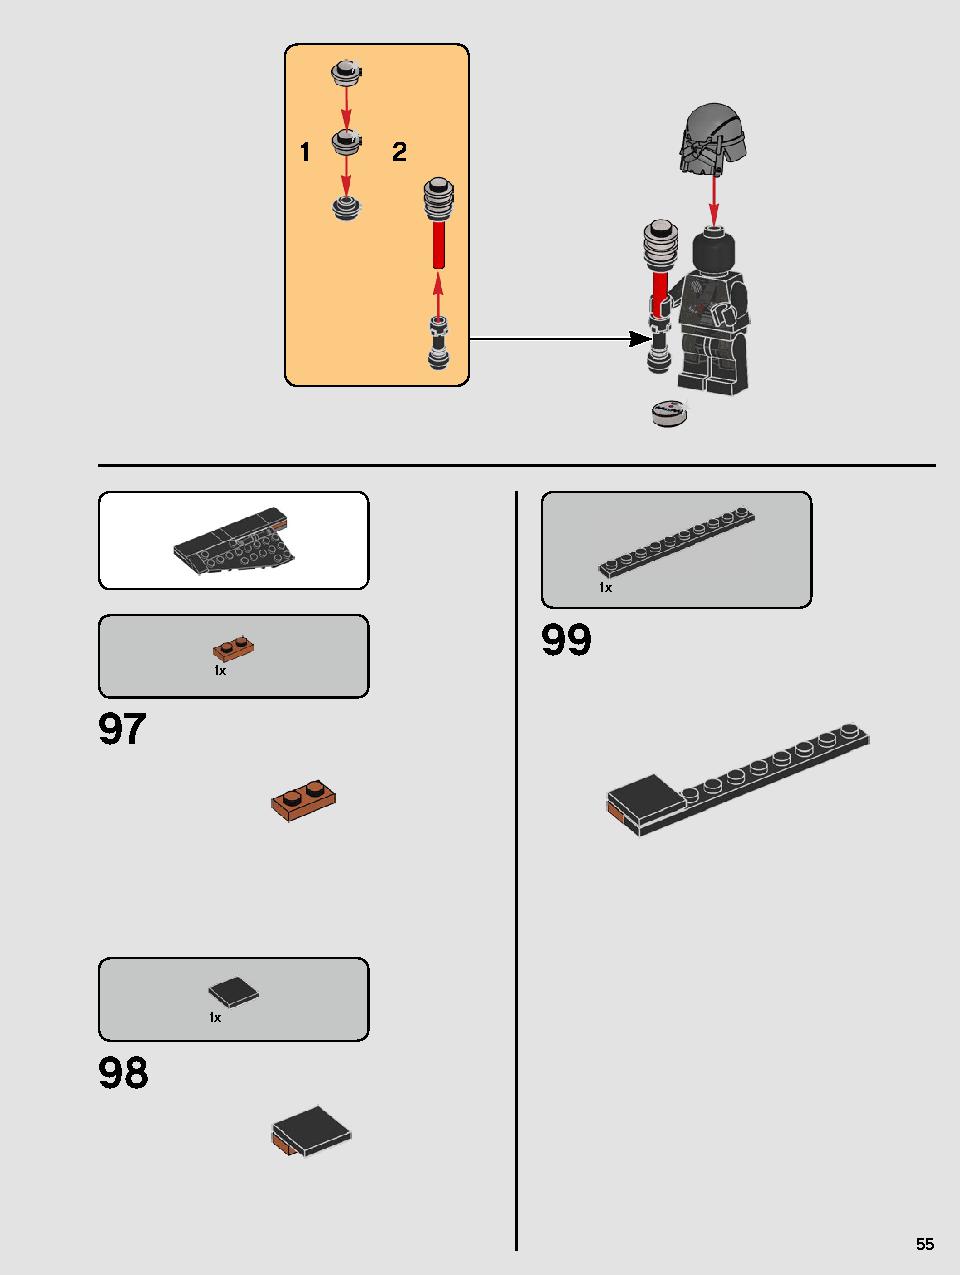 스타워즈 카일로 렌의 셔틀™ 75256 레고 세트 제품정보 레고 조립설명서 55 page